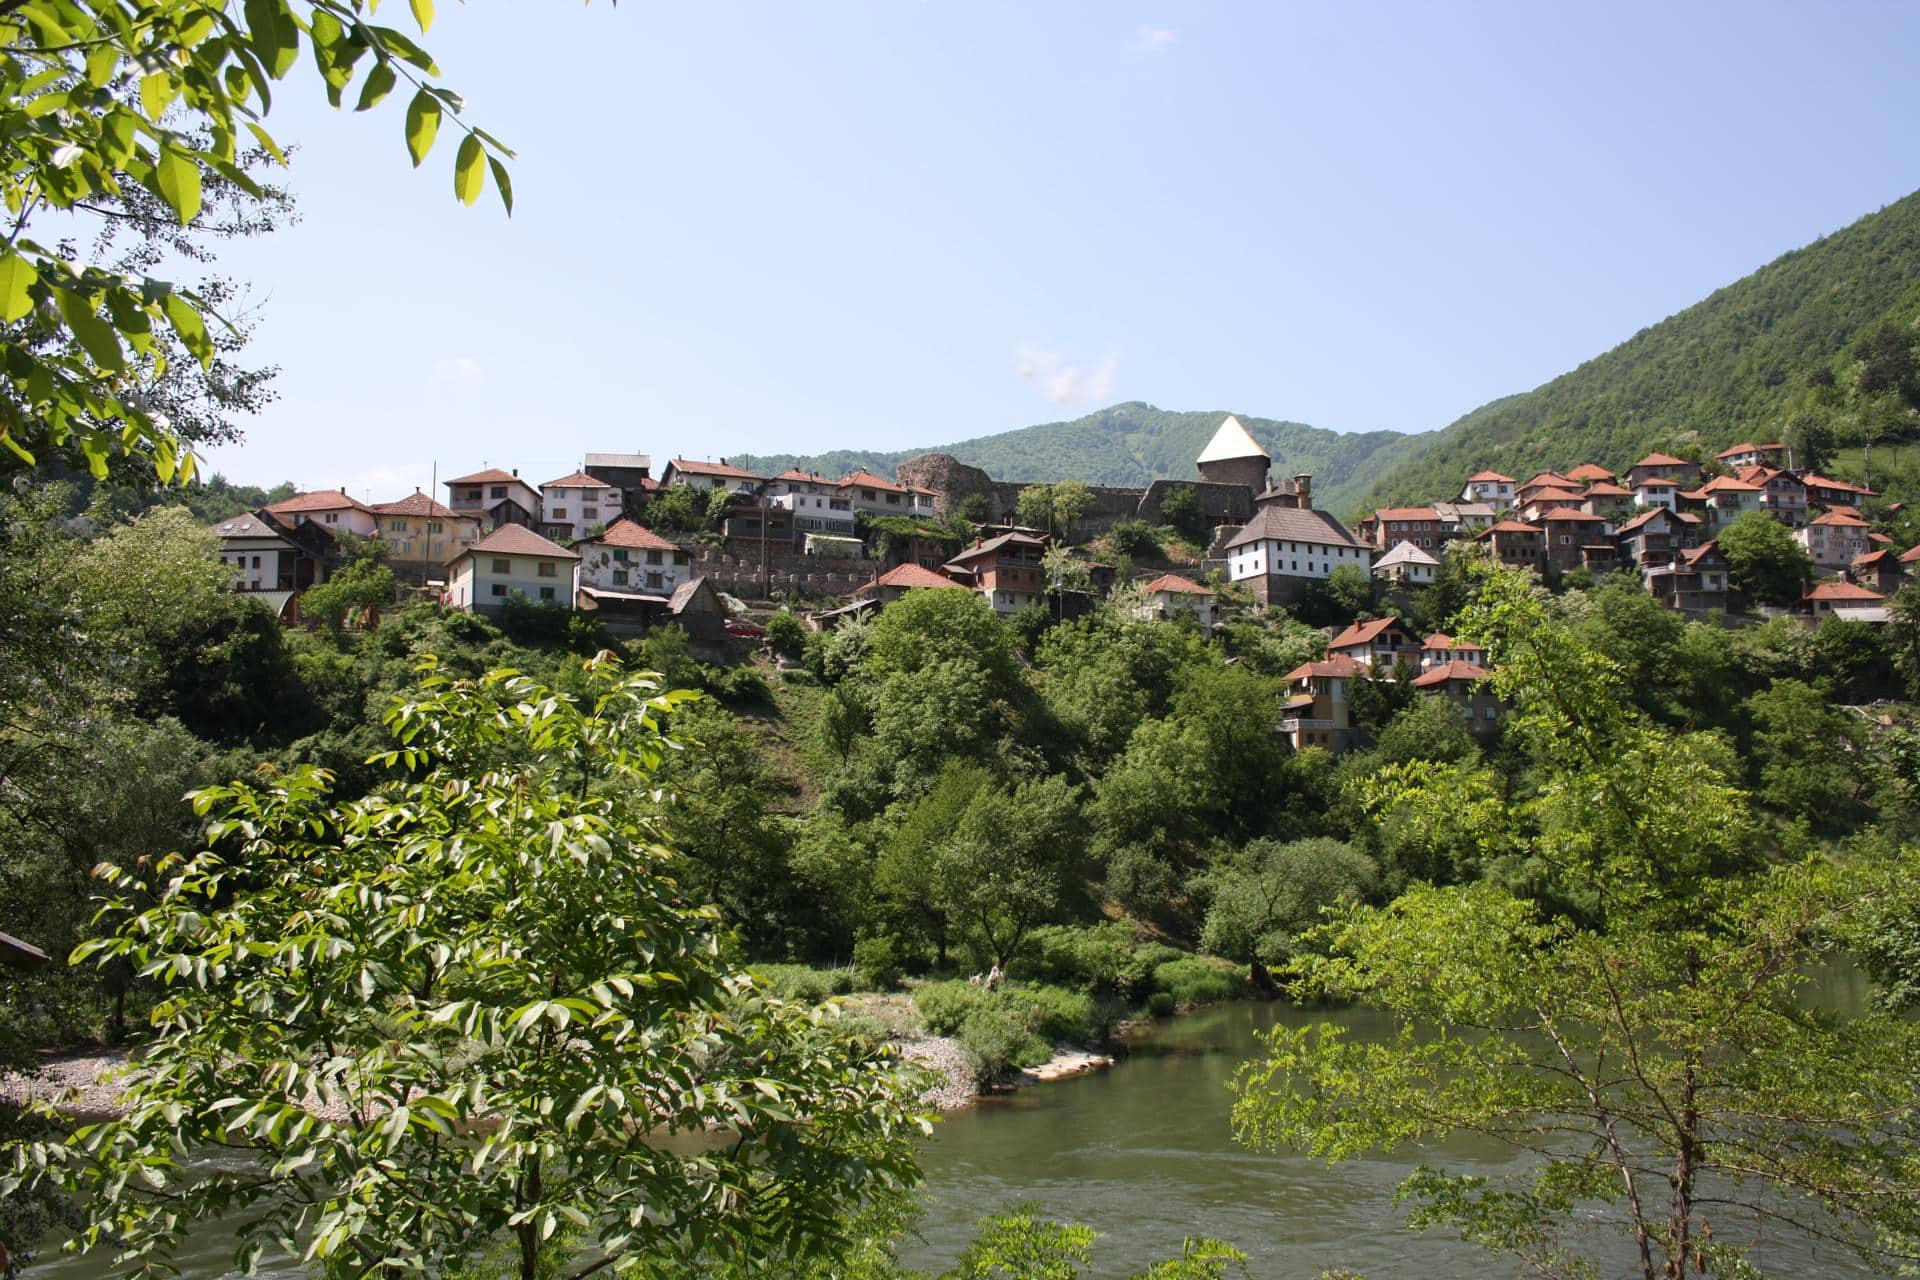 Mittleralterliches Dorf Vranduk nahe Zenica am Flussufer der Bosna, unweit von Bilino Polje